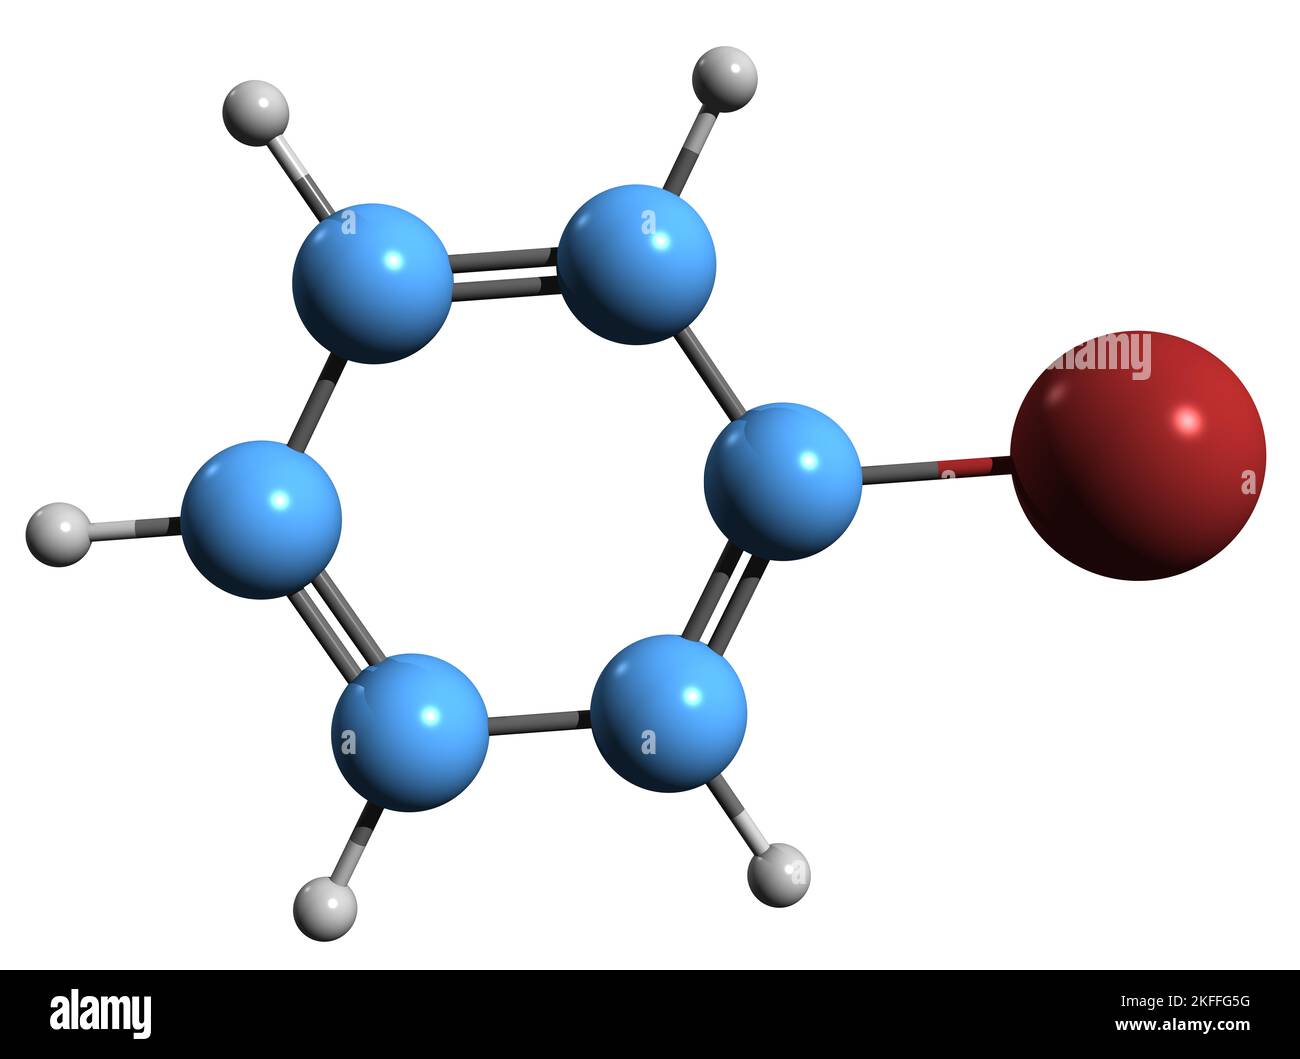 3D Bild der Skelettformel von Brombenzol - molekulare chemische Struktur des Arylhalogenids Phenylbromid isoliert auf weißem Hintergrund Stockfoto